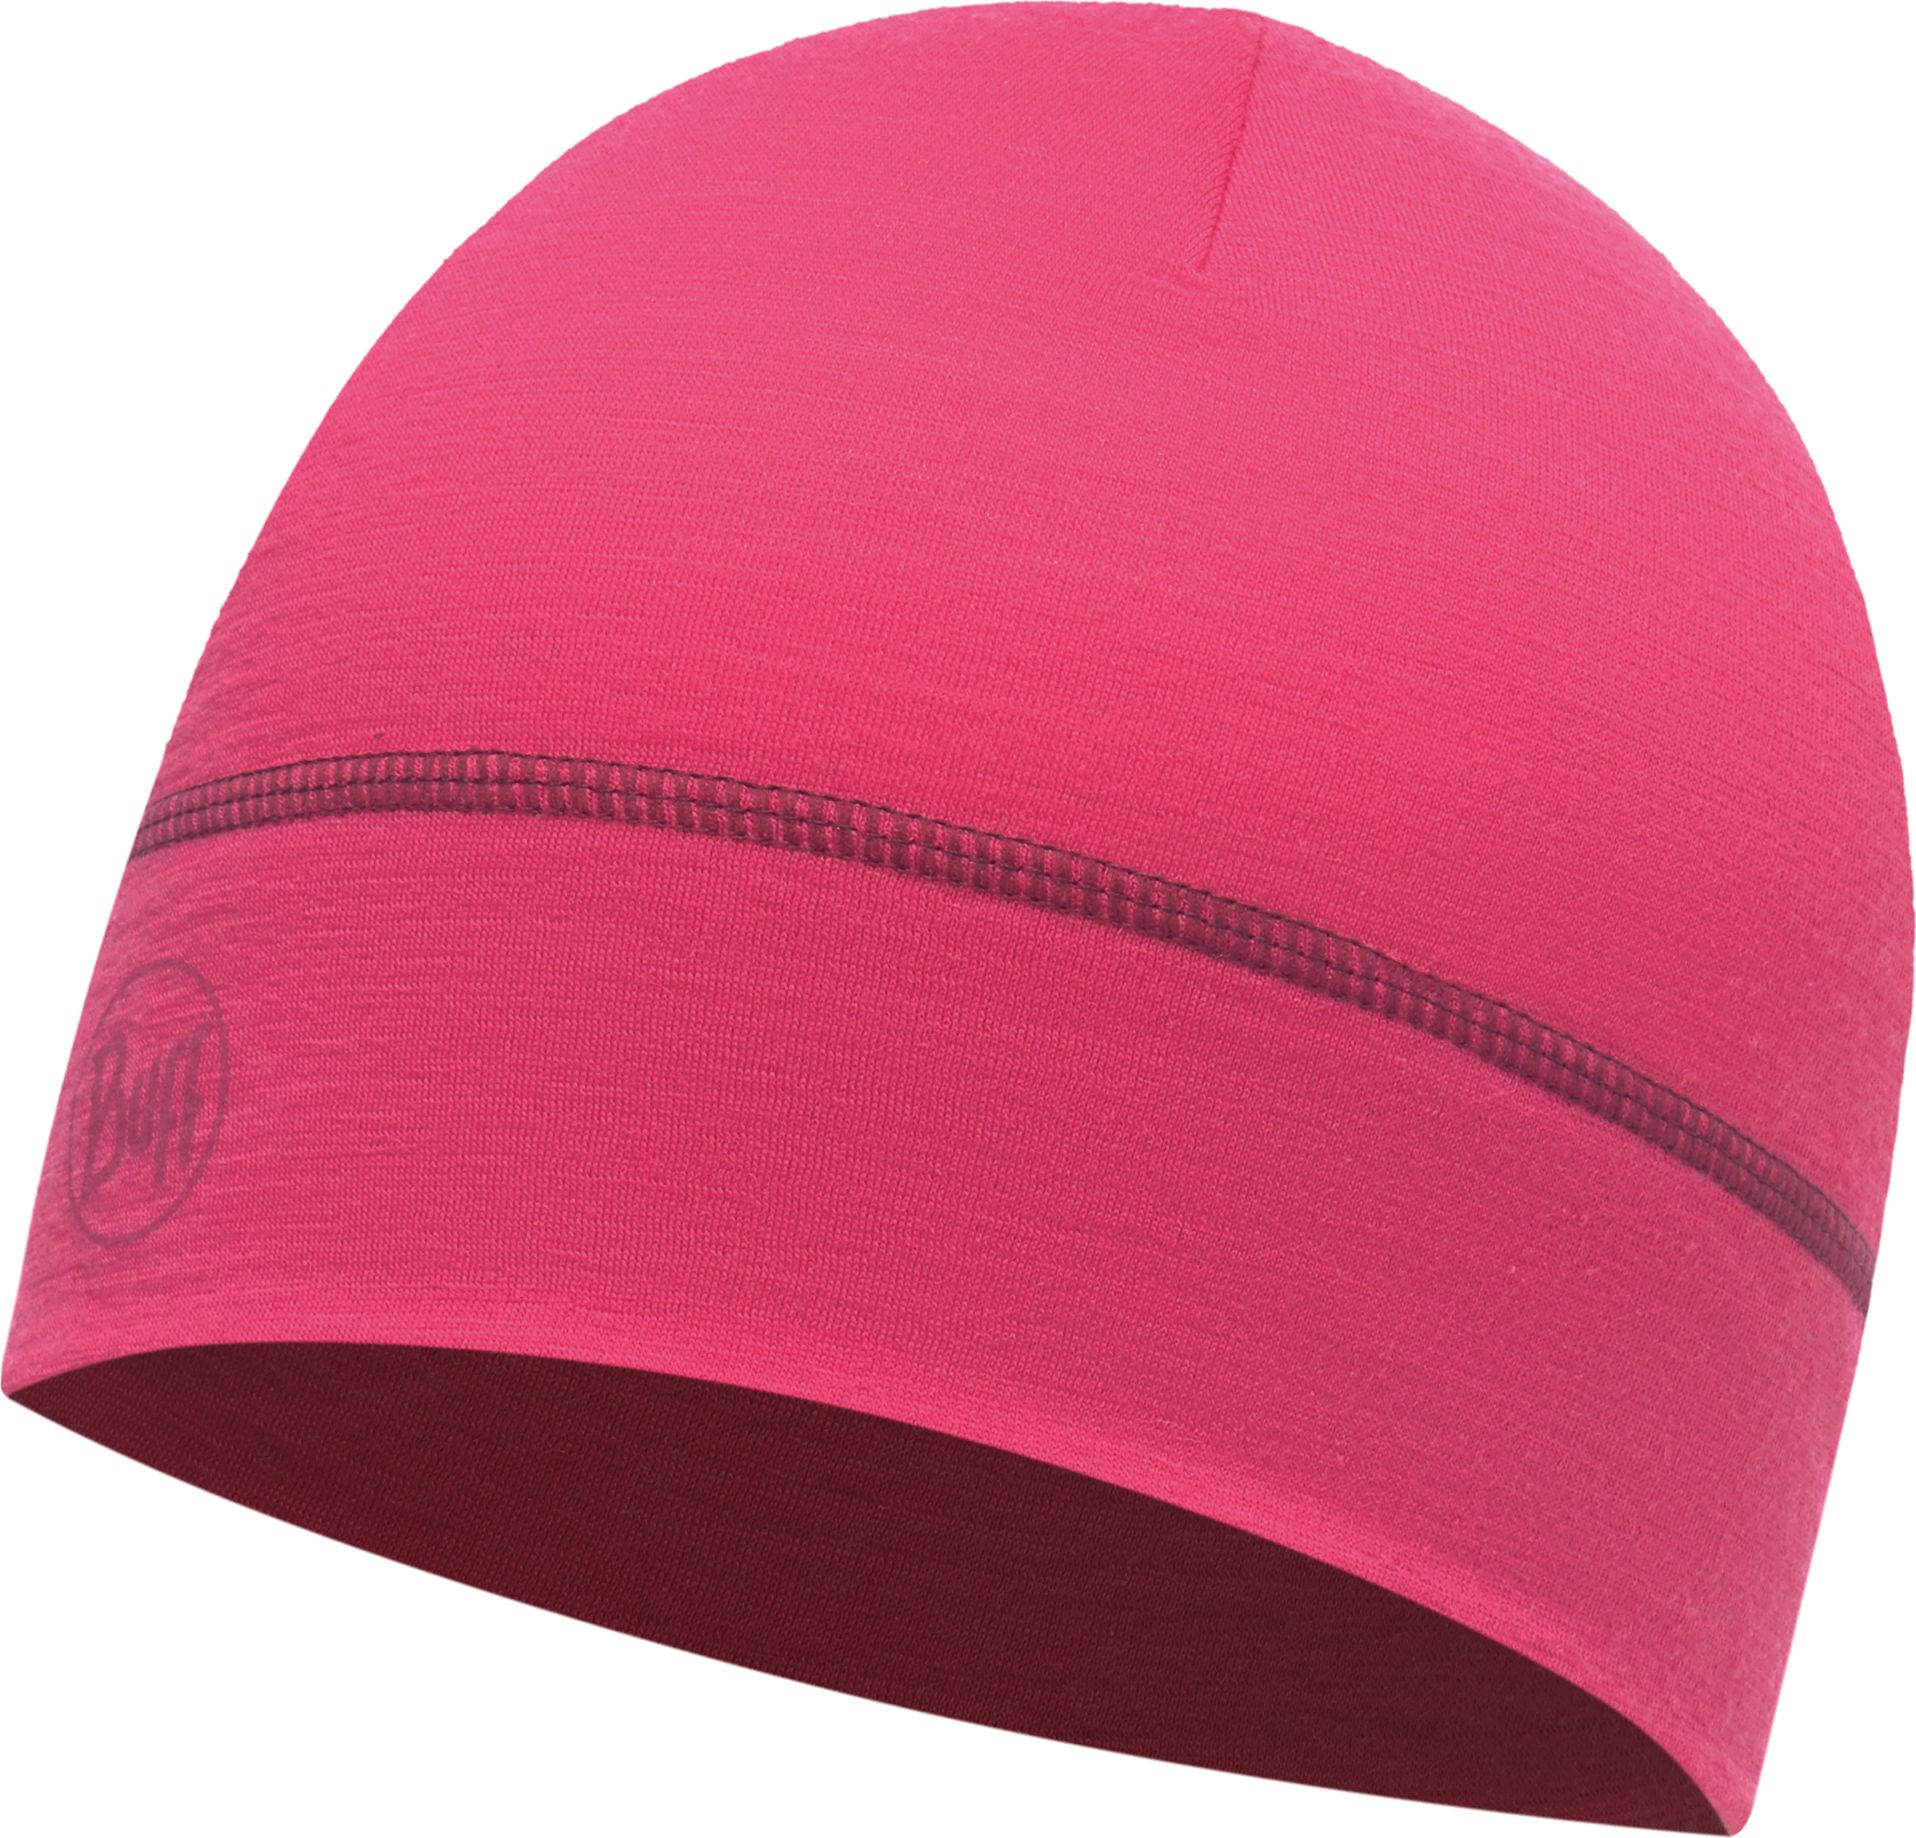 Шапка Buff Lightweight Merino Wool 1 Layer Hat Solid Wild Pink, цвет: розовый. 117065.540.10.00. Размер универсальный